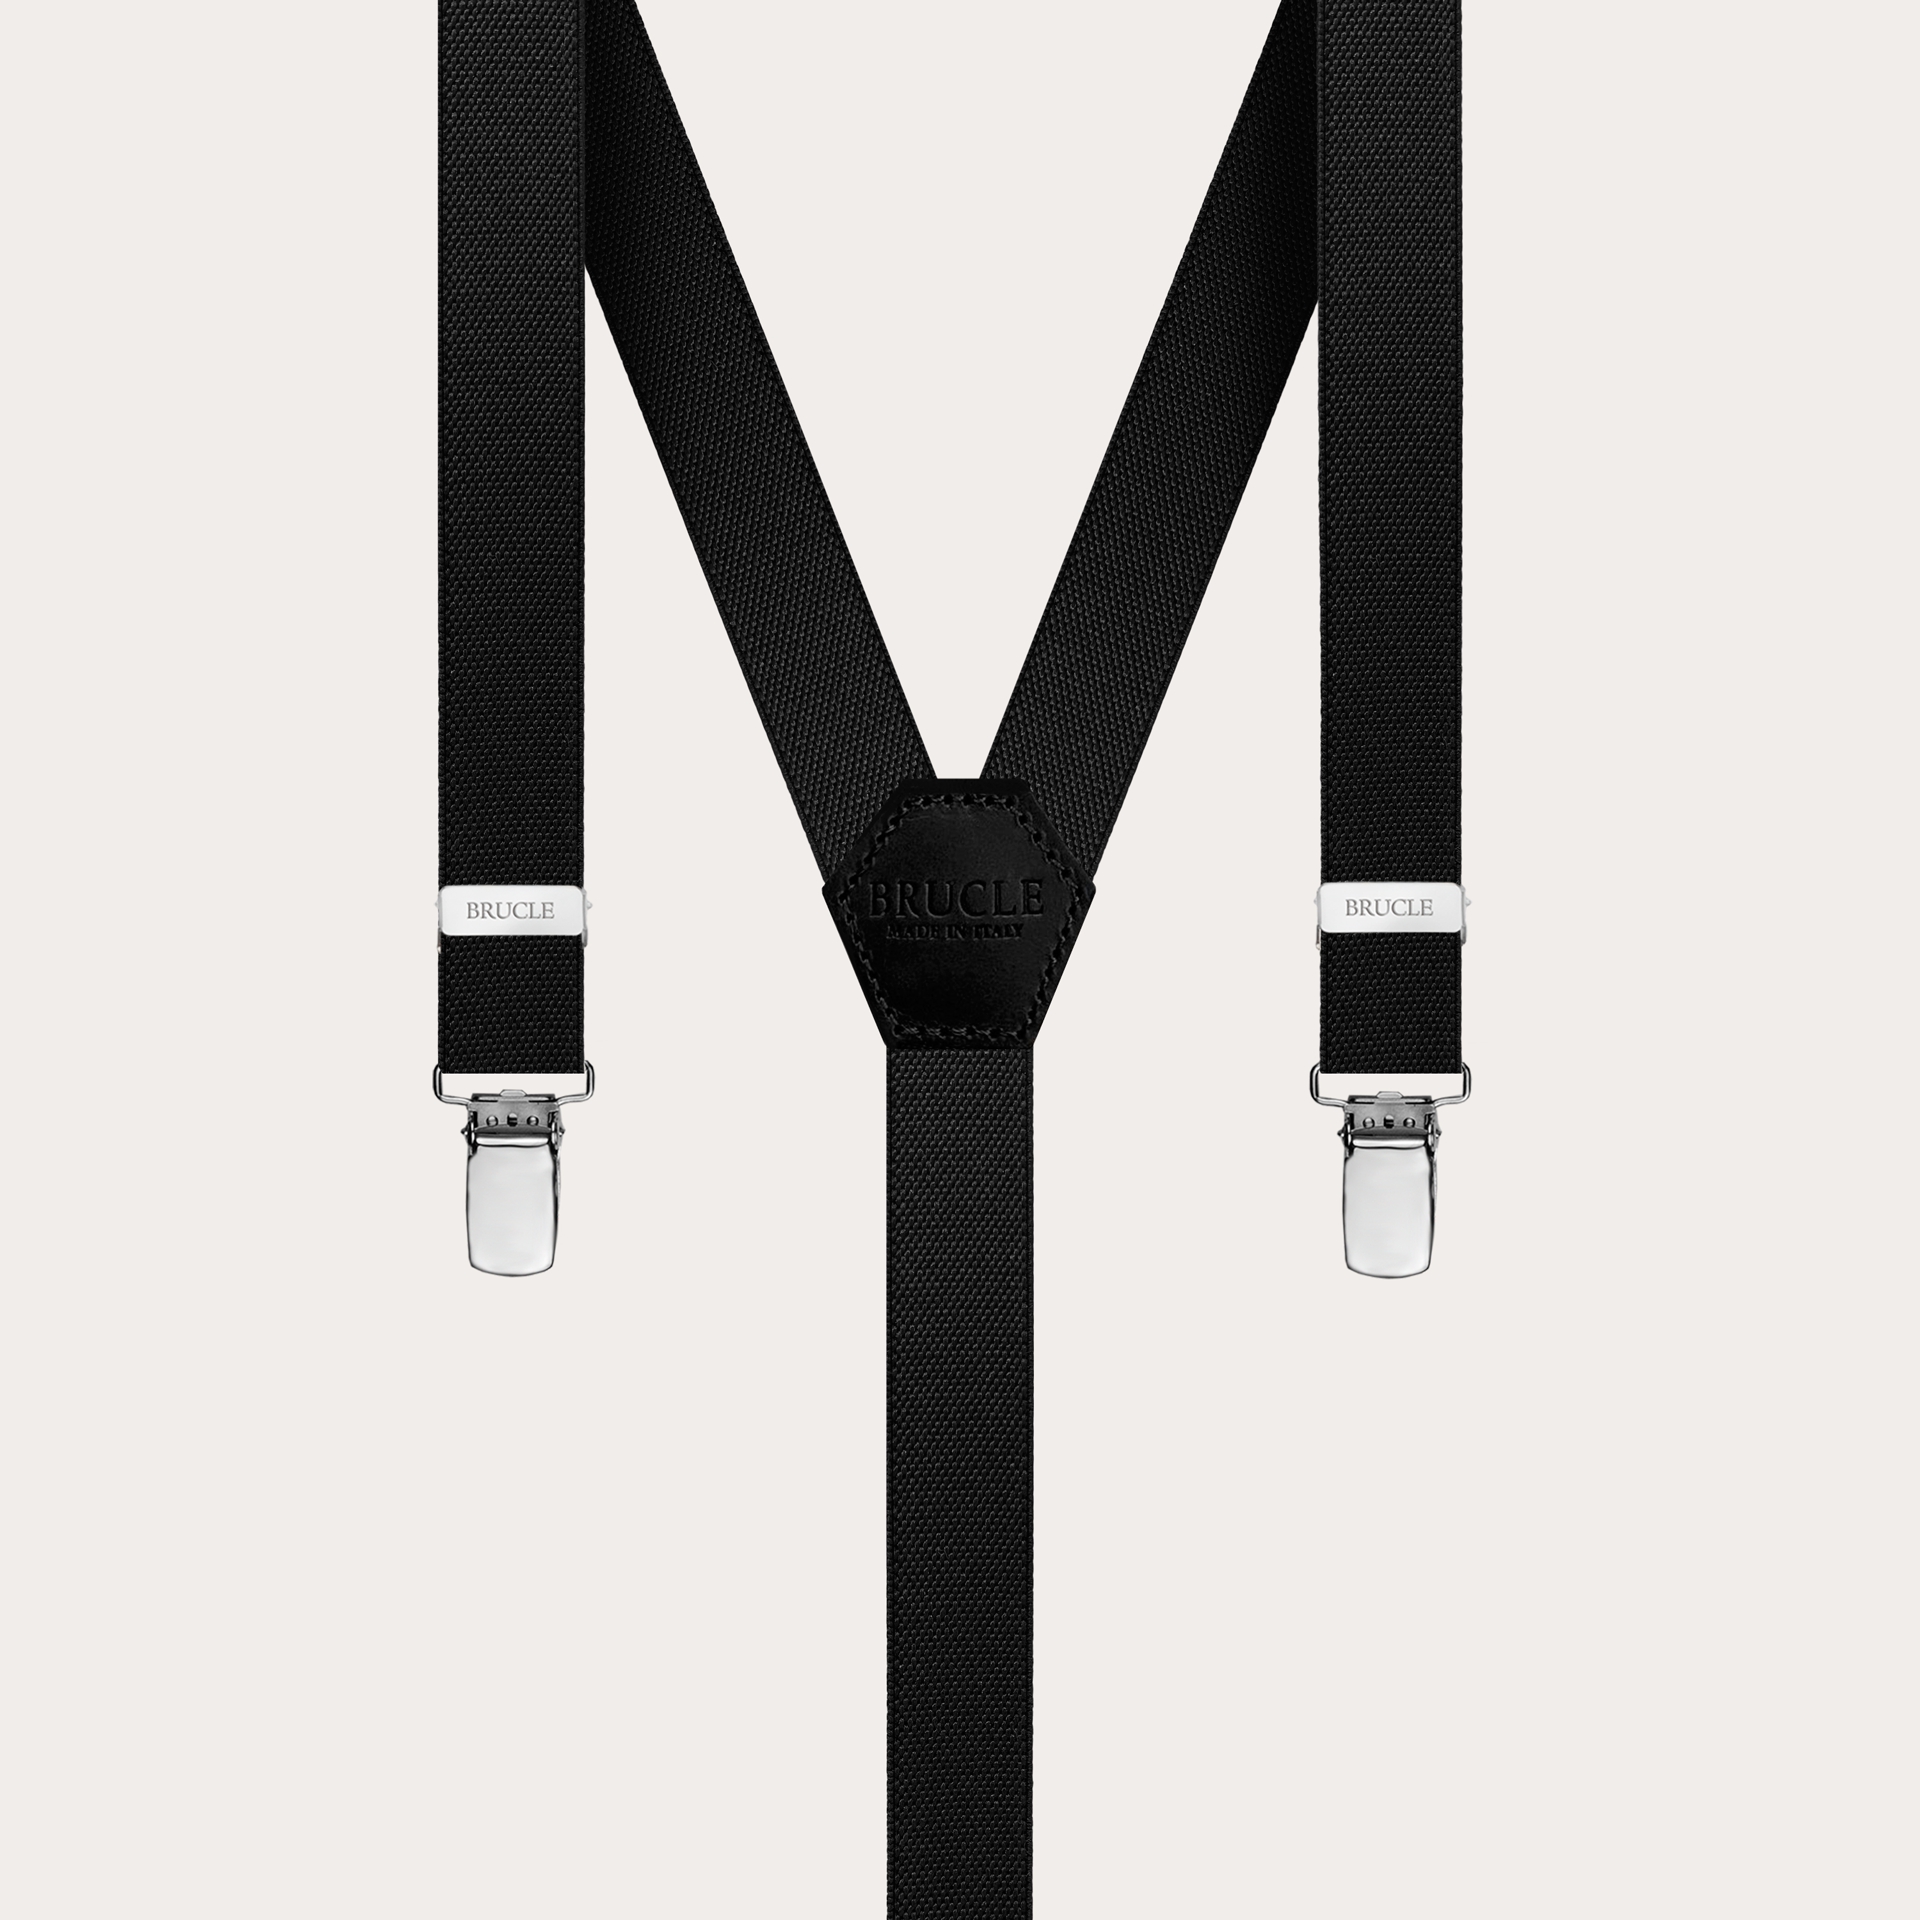 Children's and teens' slim unisex Y-shaped suspenders, black